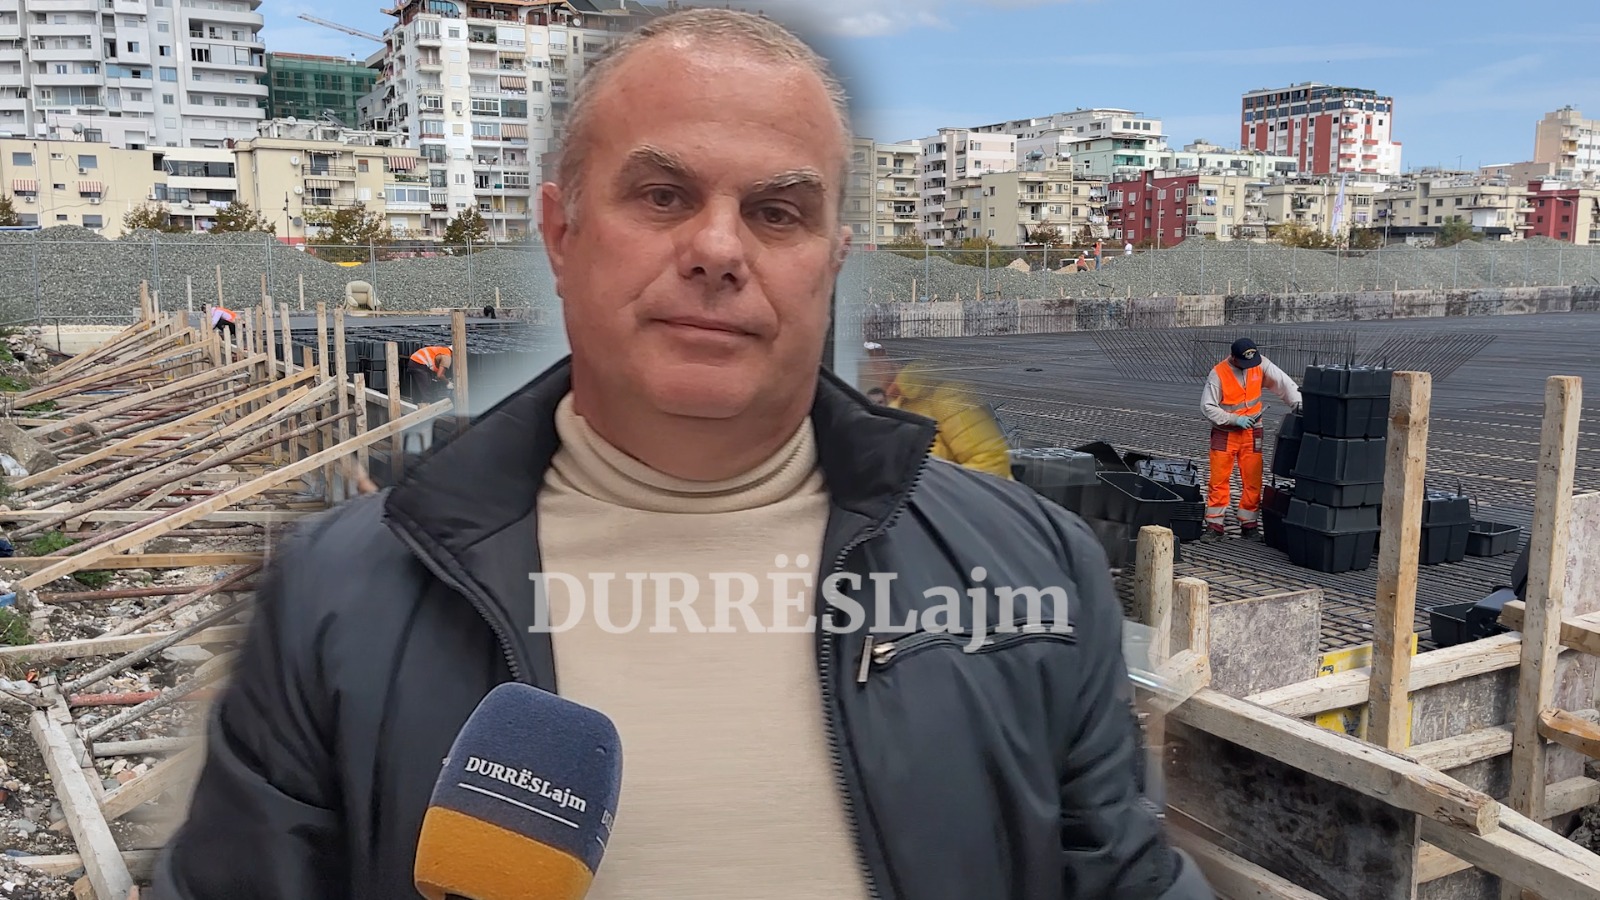 Pa leje ndërtimi, këshilltari Muka denoncon: Dje, parkimi publik i Durrësit u betonizua (VIDEO)